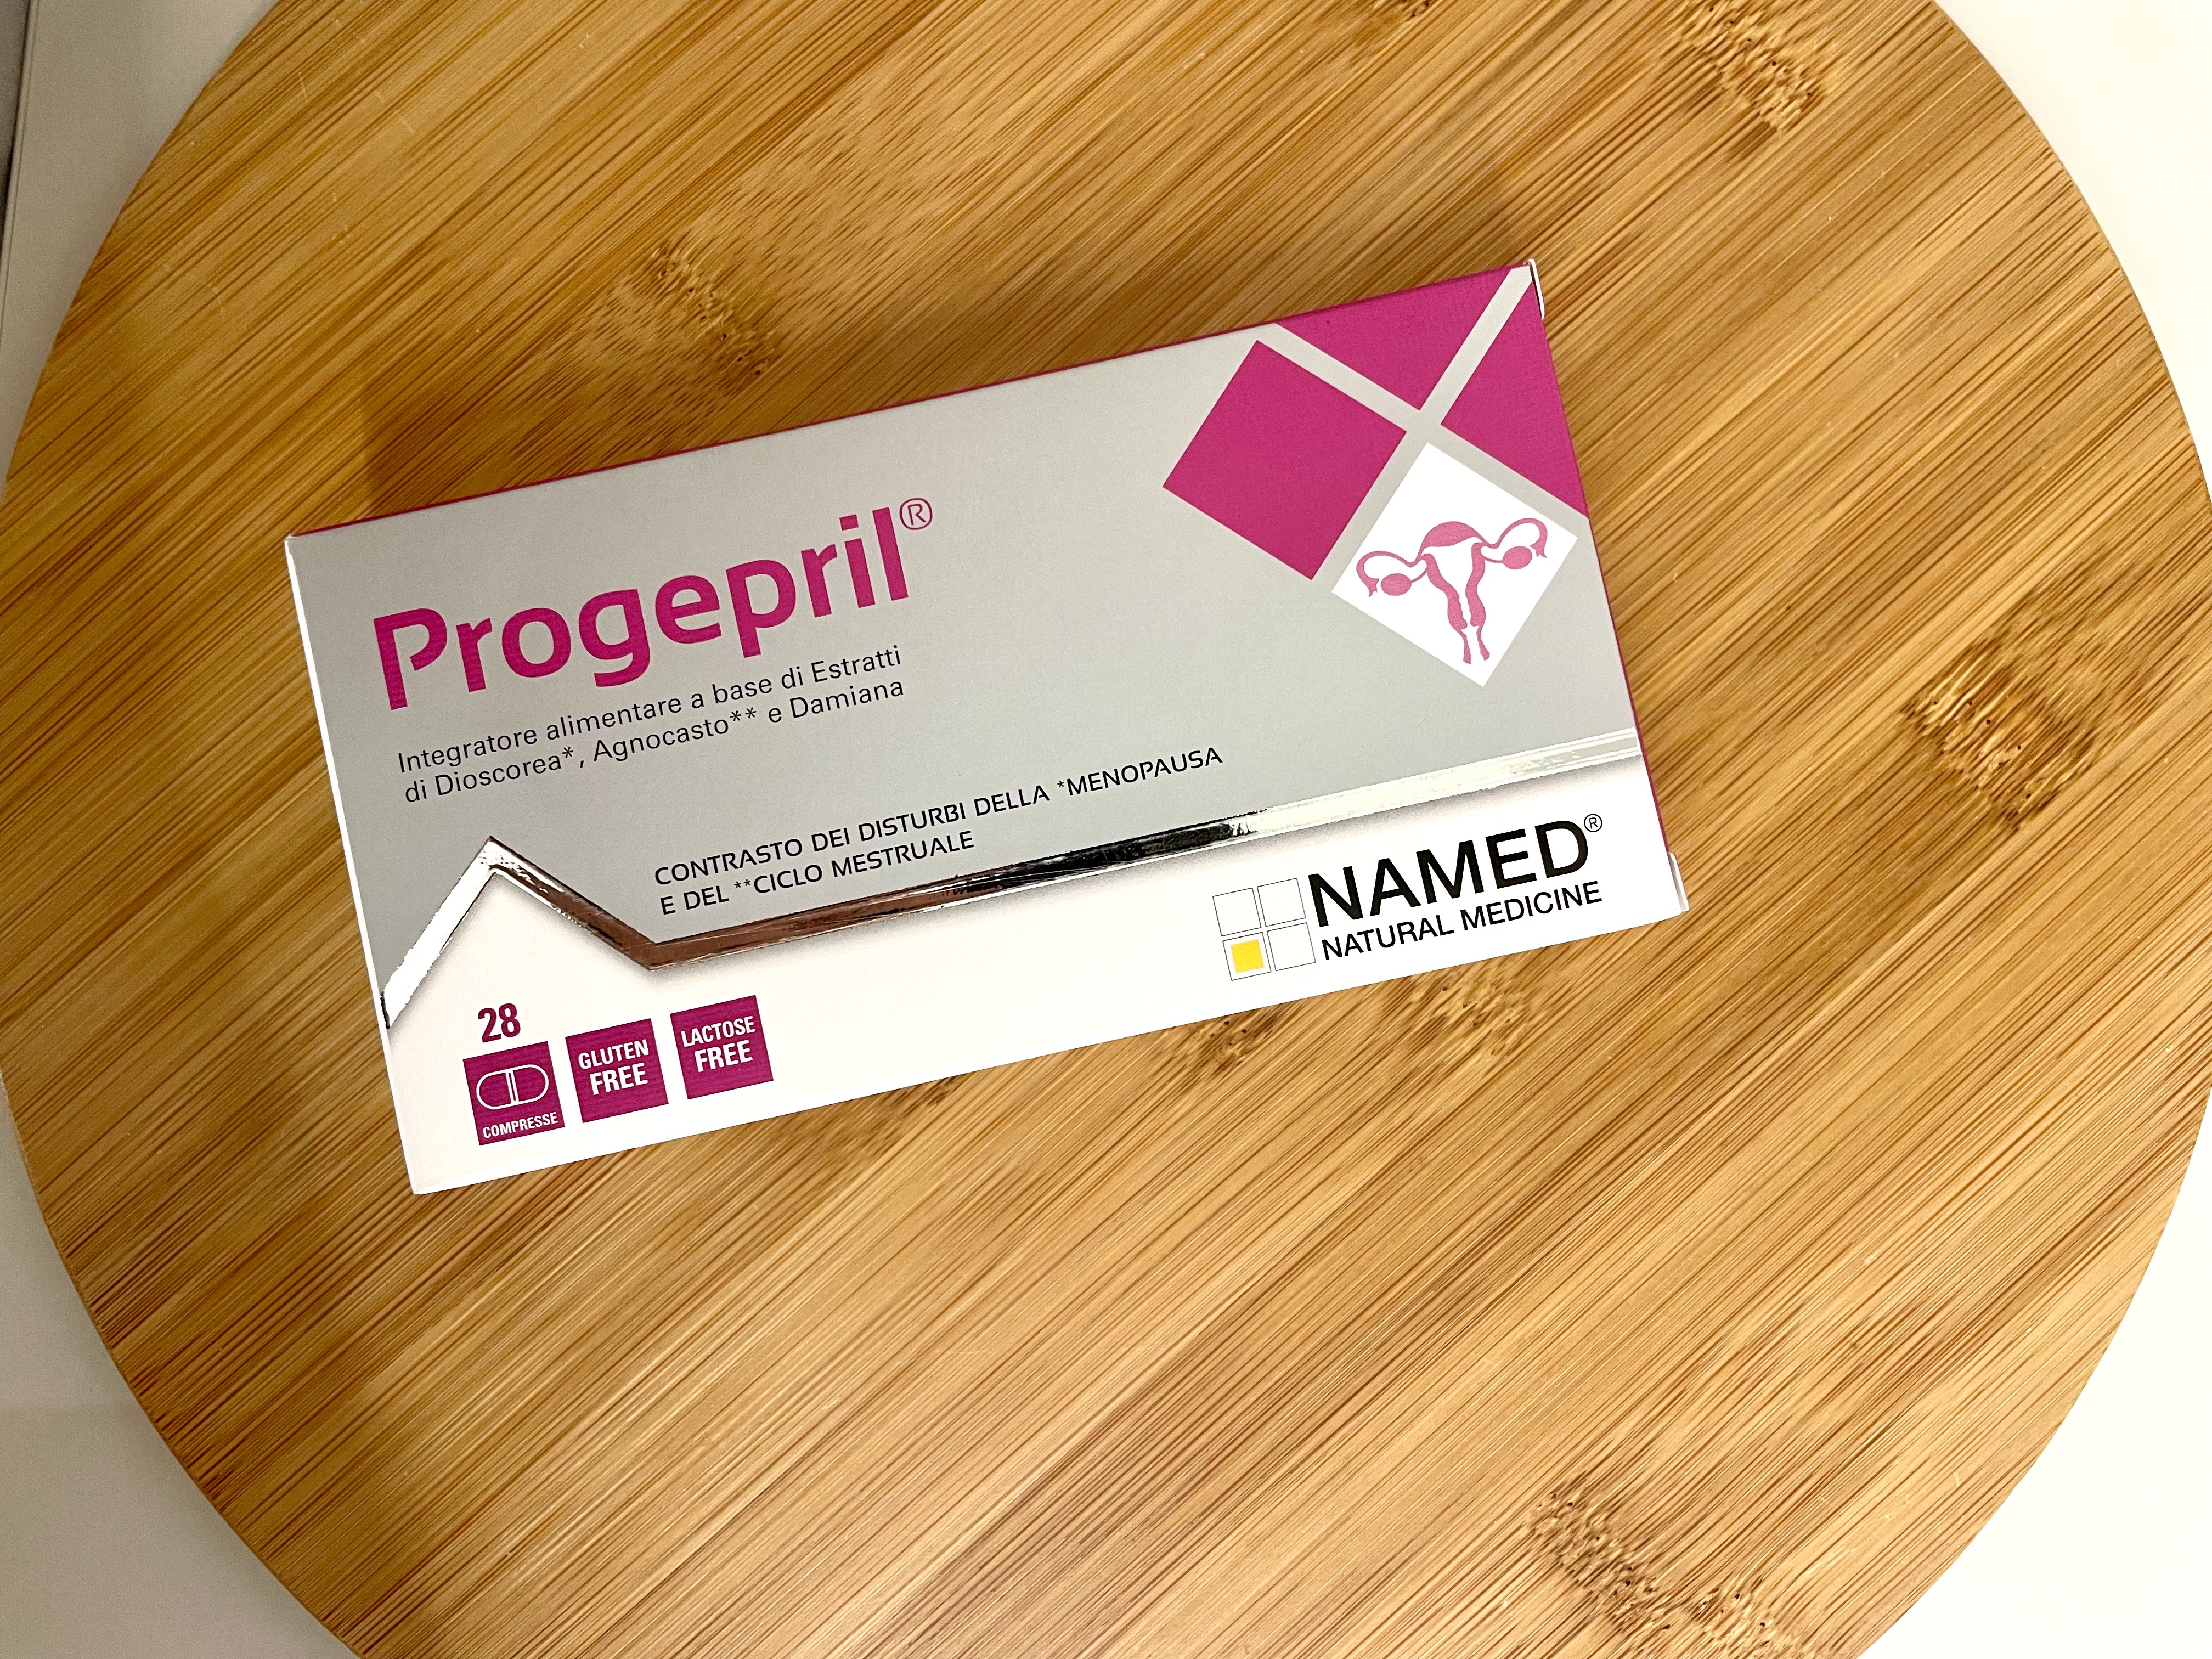 Named: Progepril